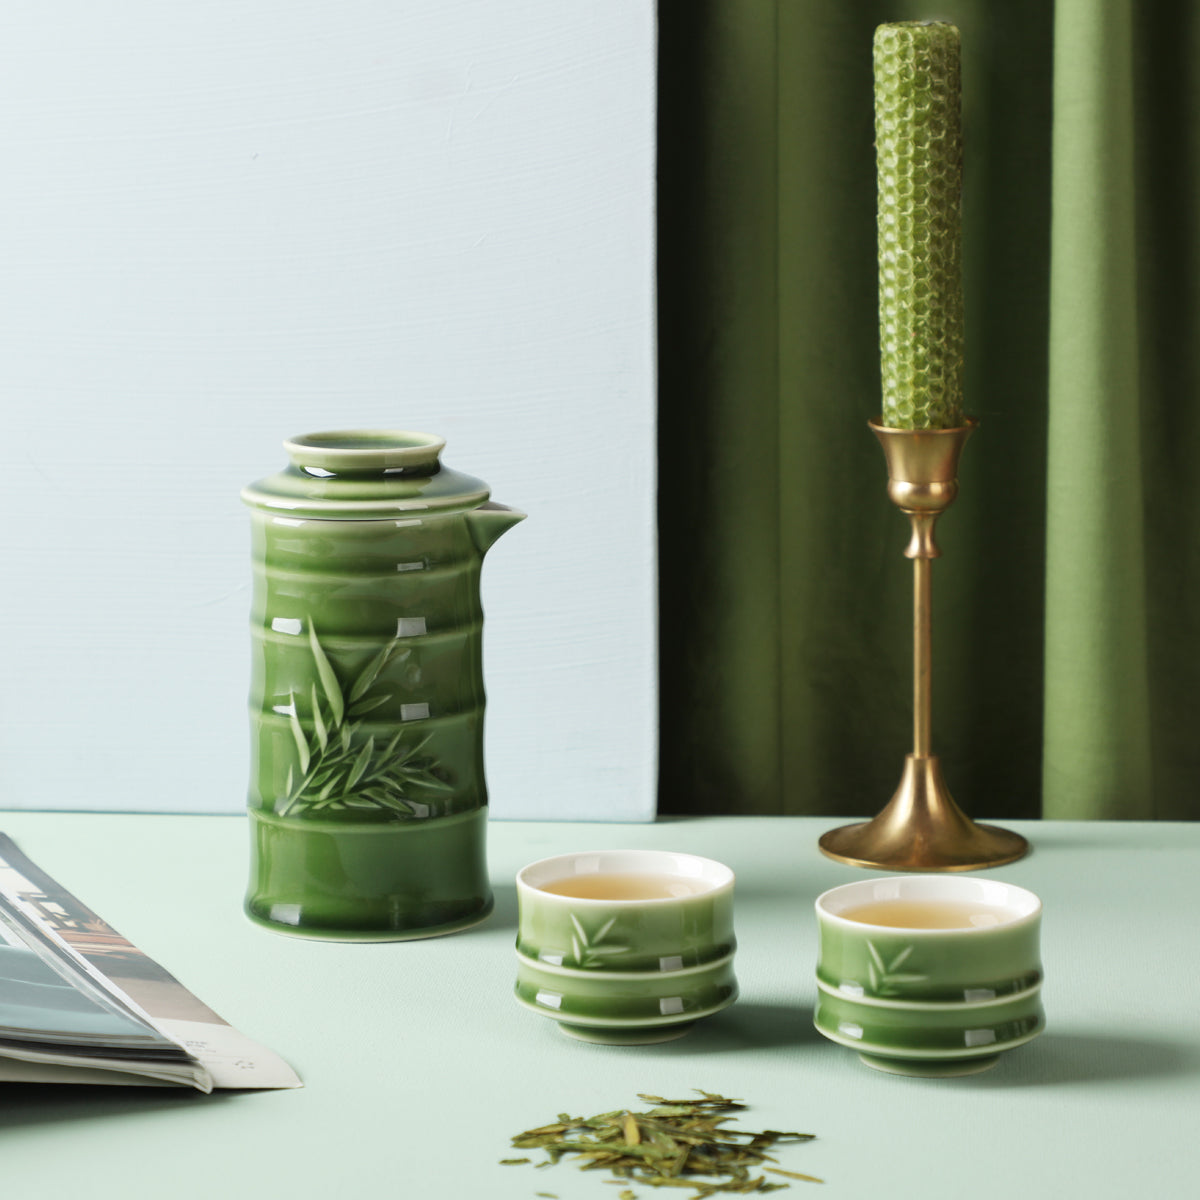 Bamboo Kung Fu Tea Set - 1 Pot with 2 Cups, Ceramics -10